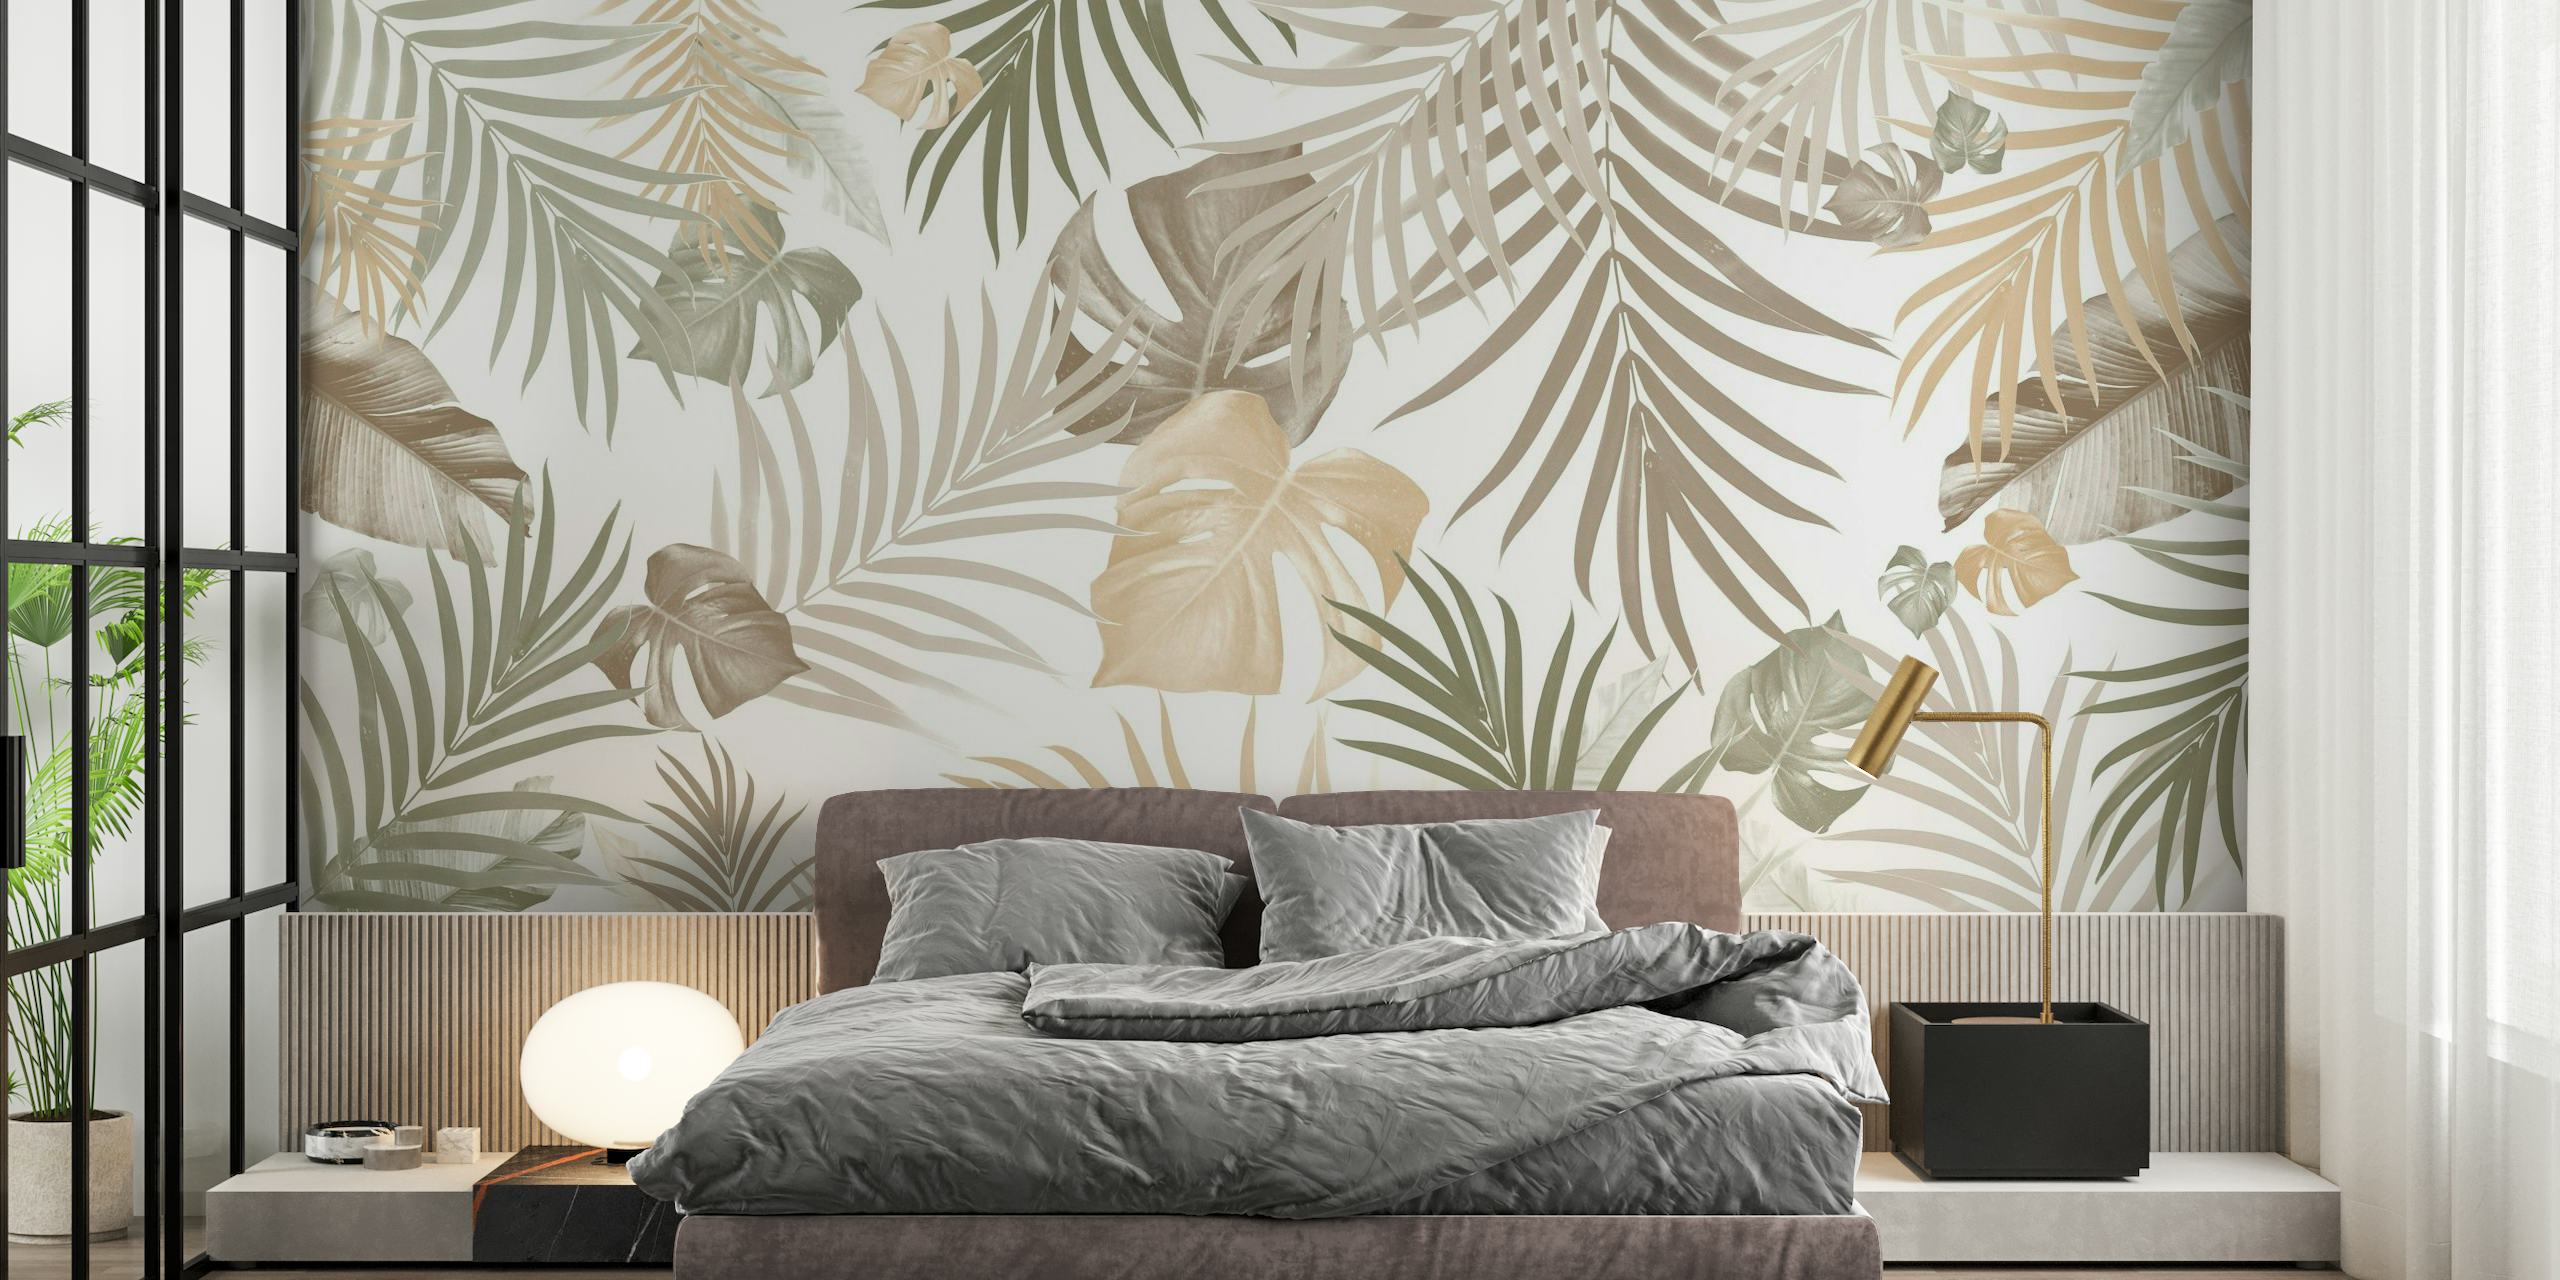 Elegantes Wandbild mit tropischen Dschungelblättern in einer neutralen Farbpalette